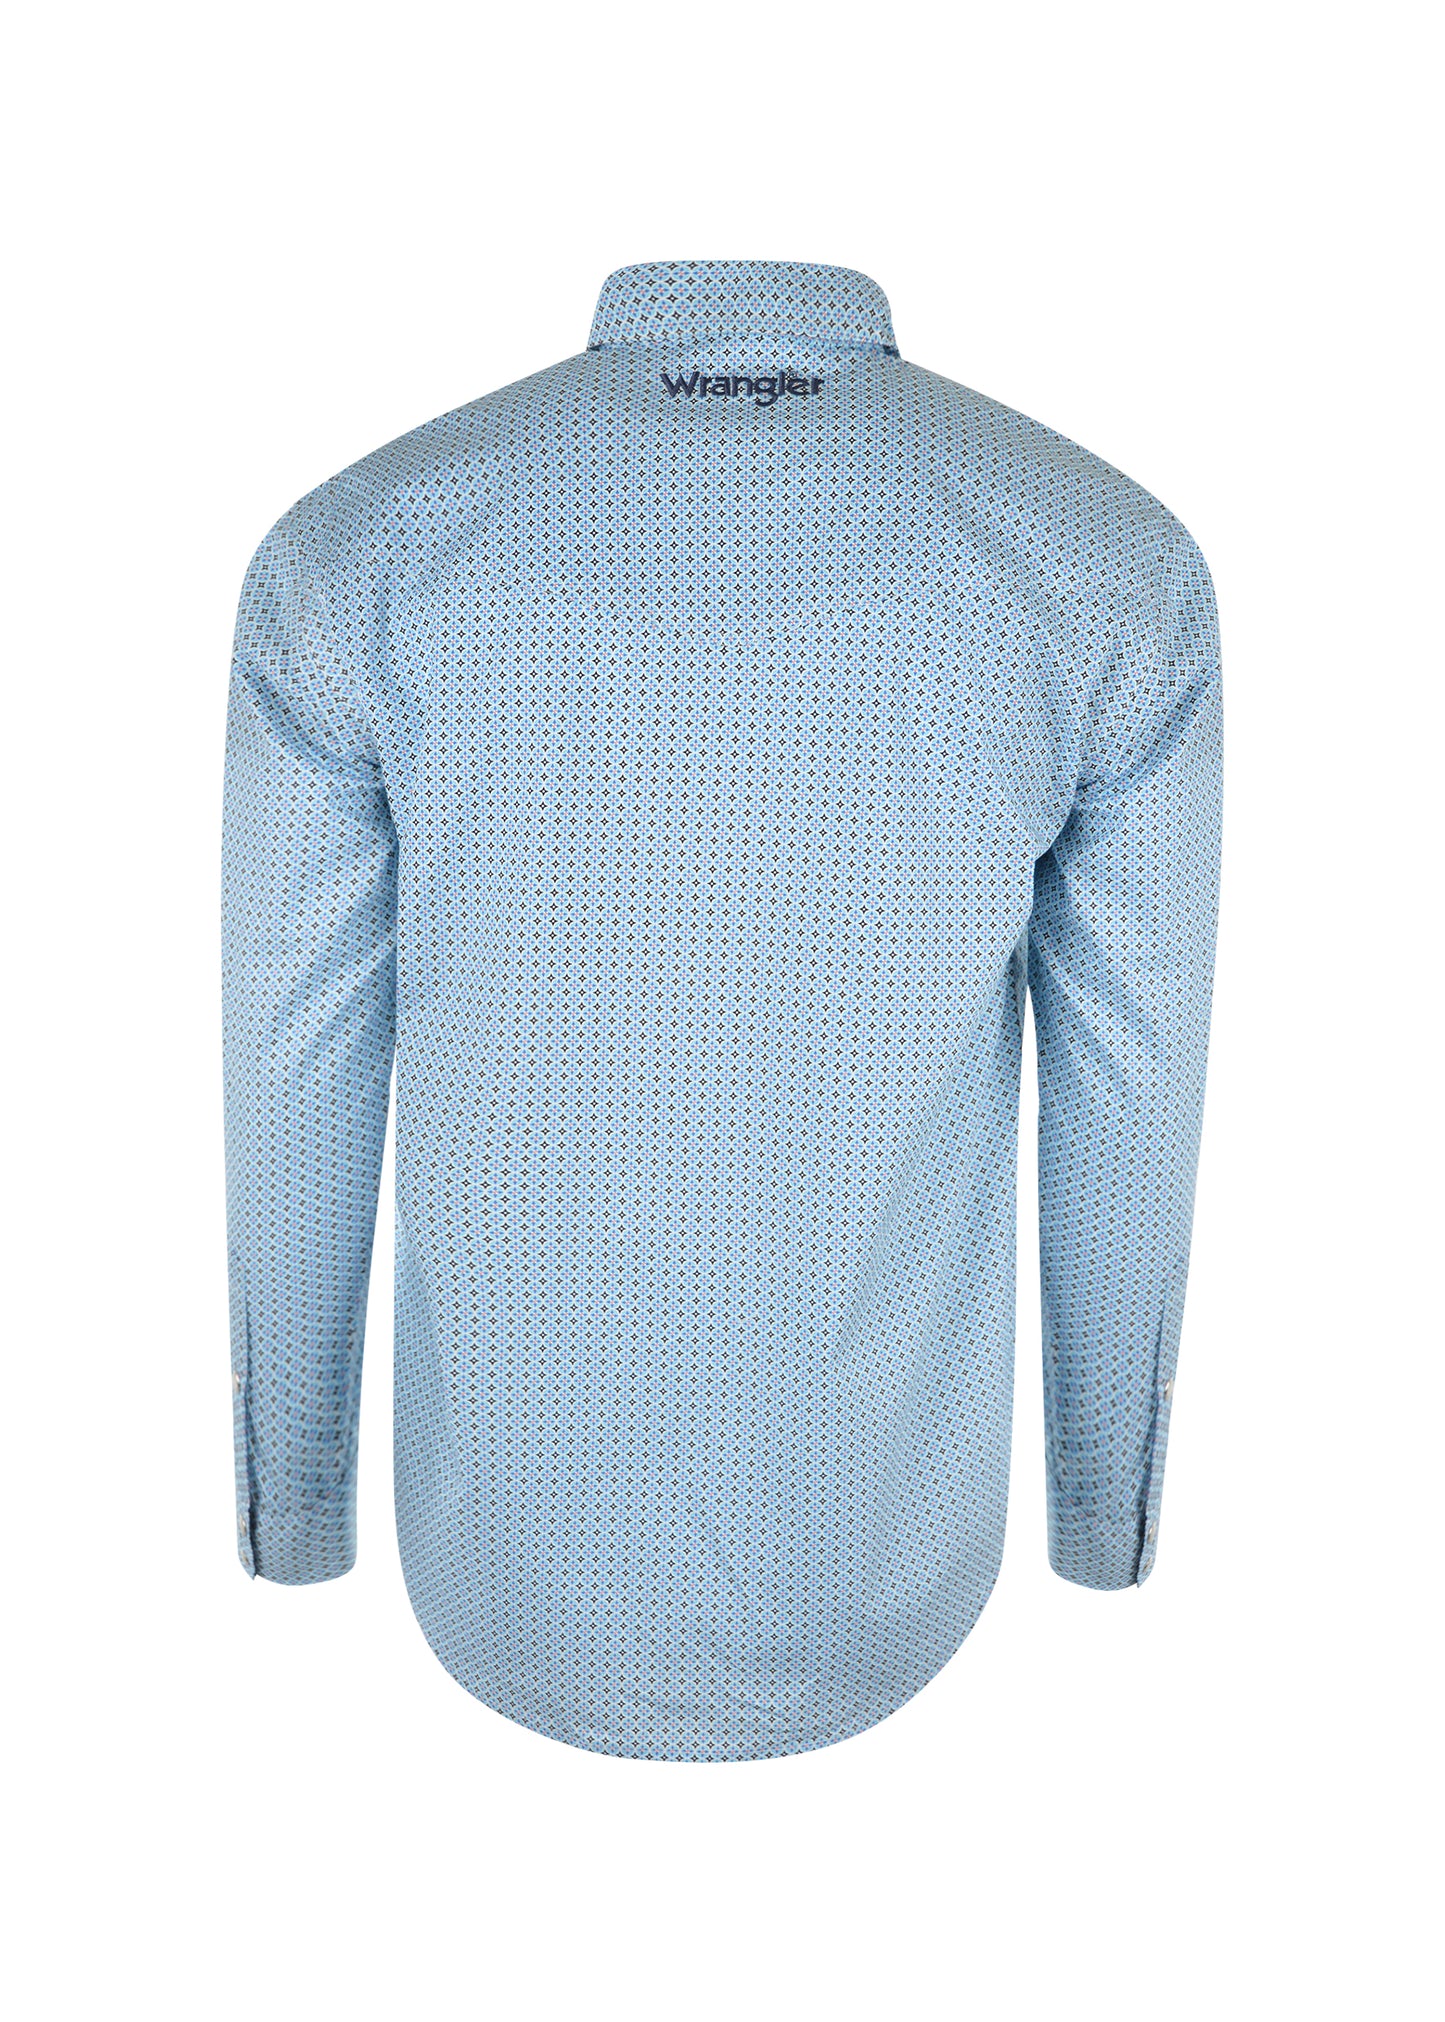 X1W1111604 Wrangler Men's Watson Print L/S Shirt Royal Blue